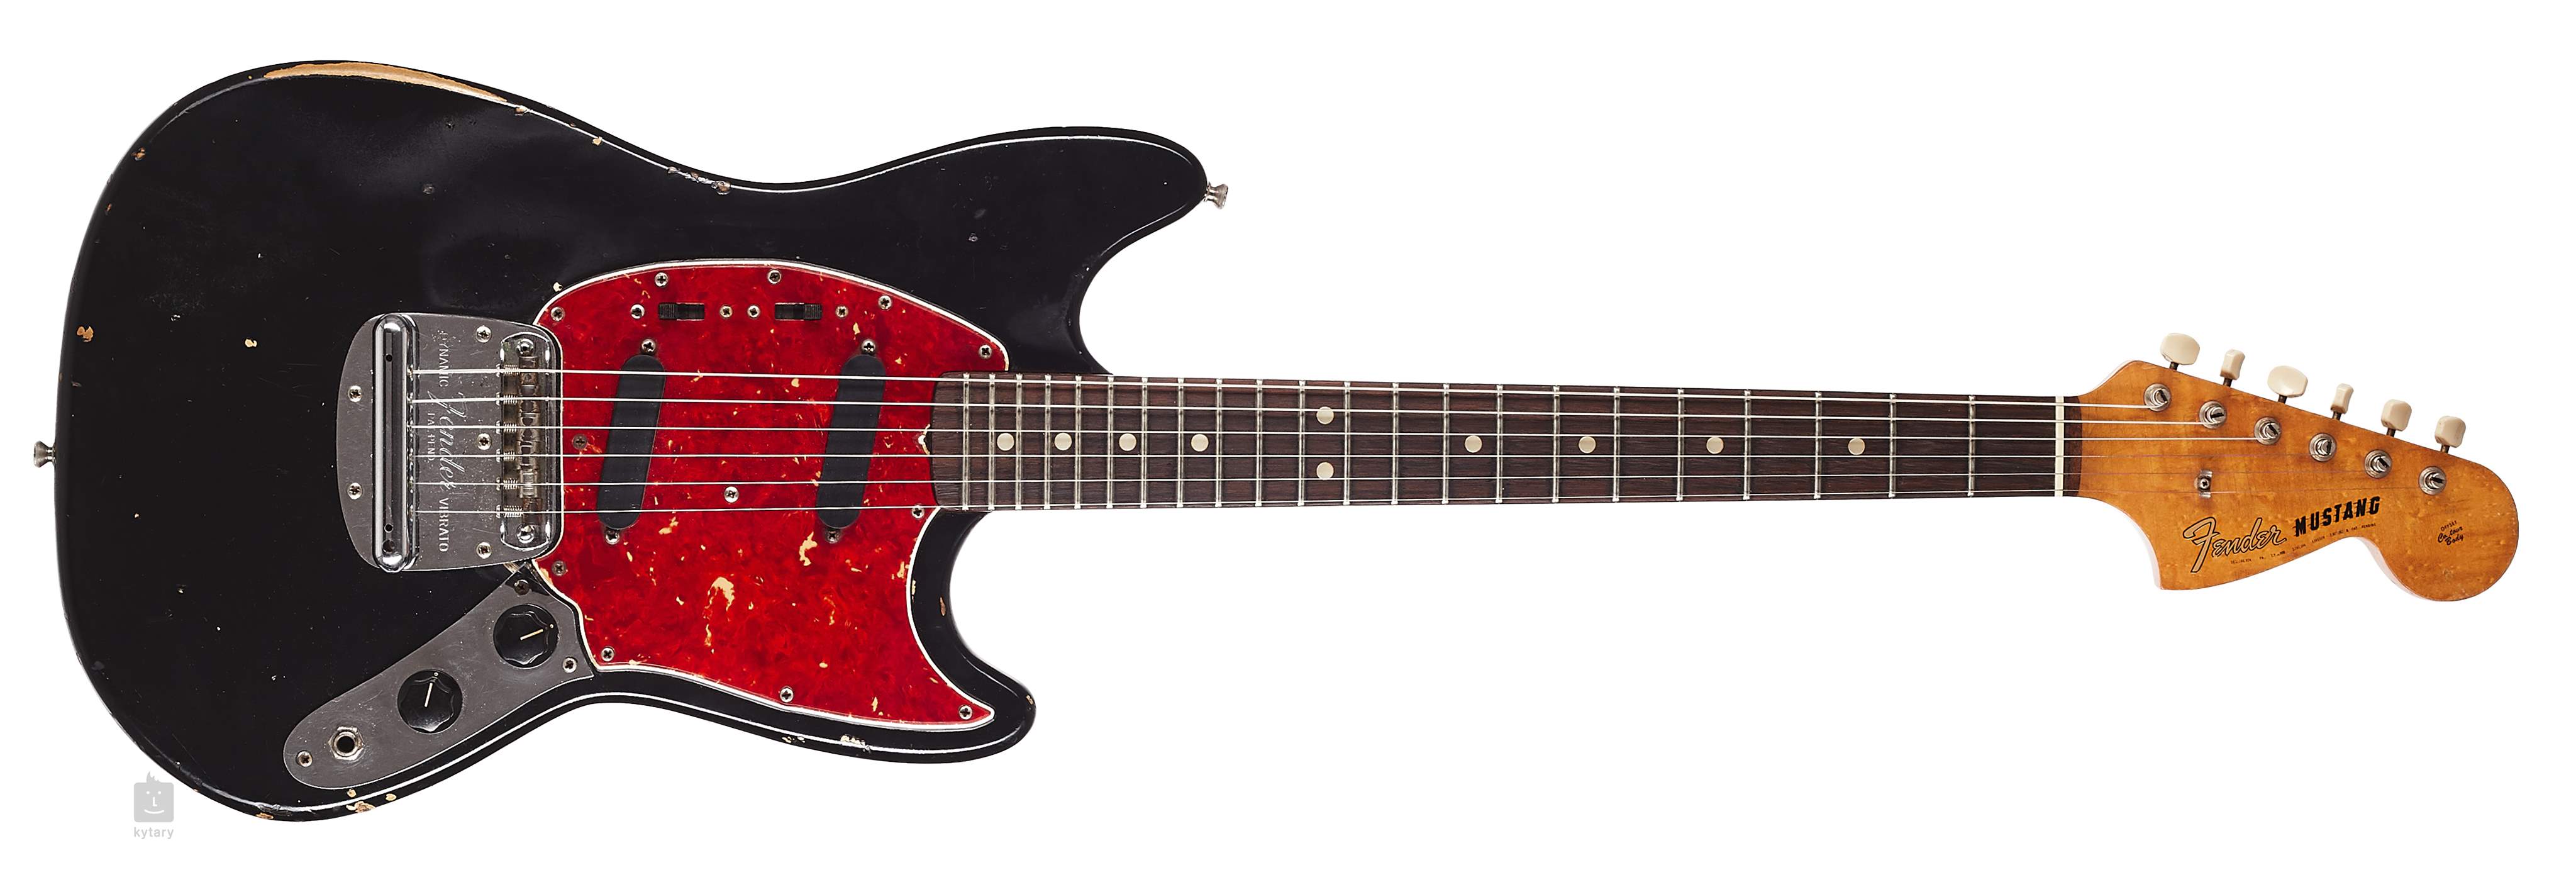 Гитара мустанг. Fender Mustang Black. Fender Mustang гитара. Fender Mustang Ваганыча. Fender Mustang body.